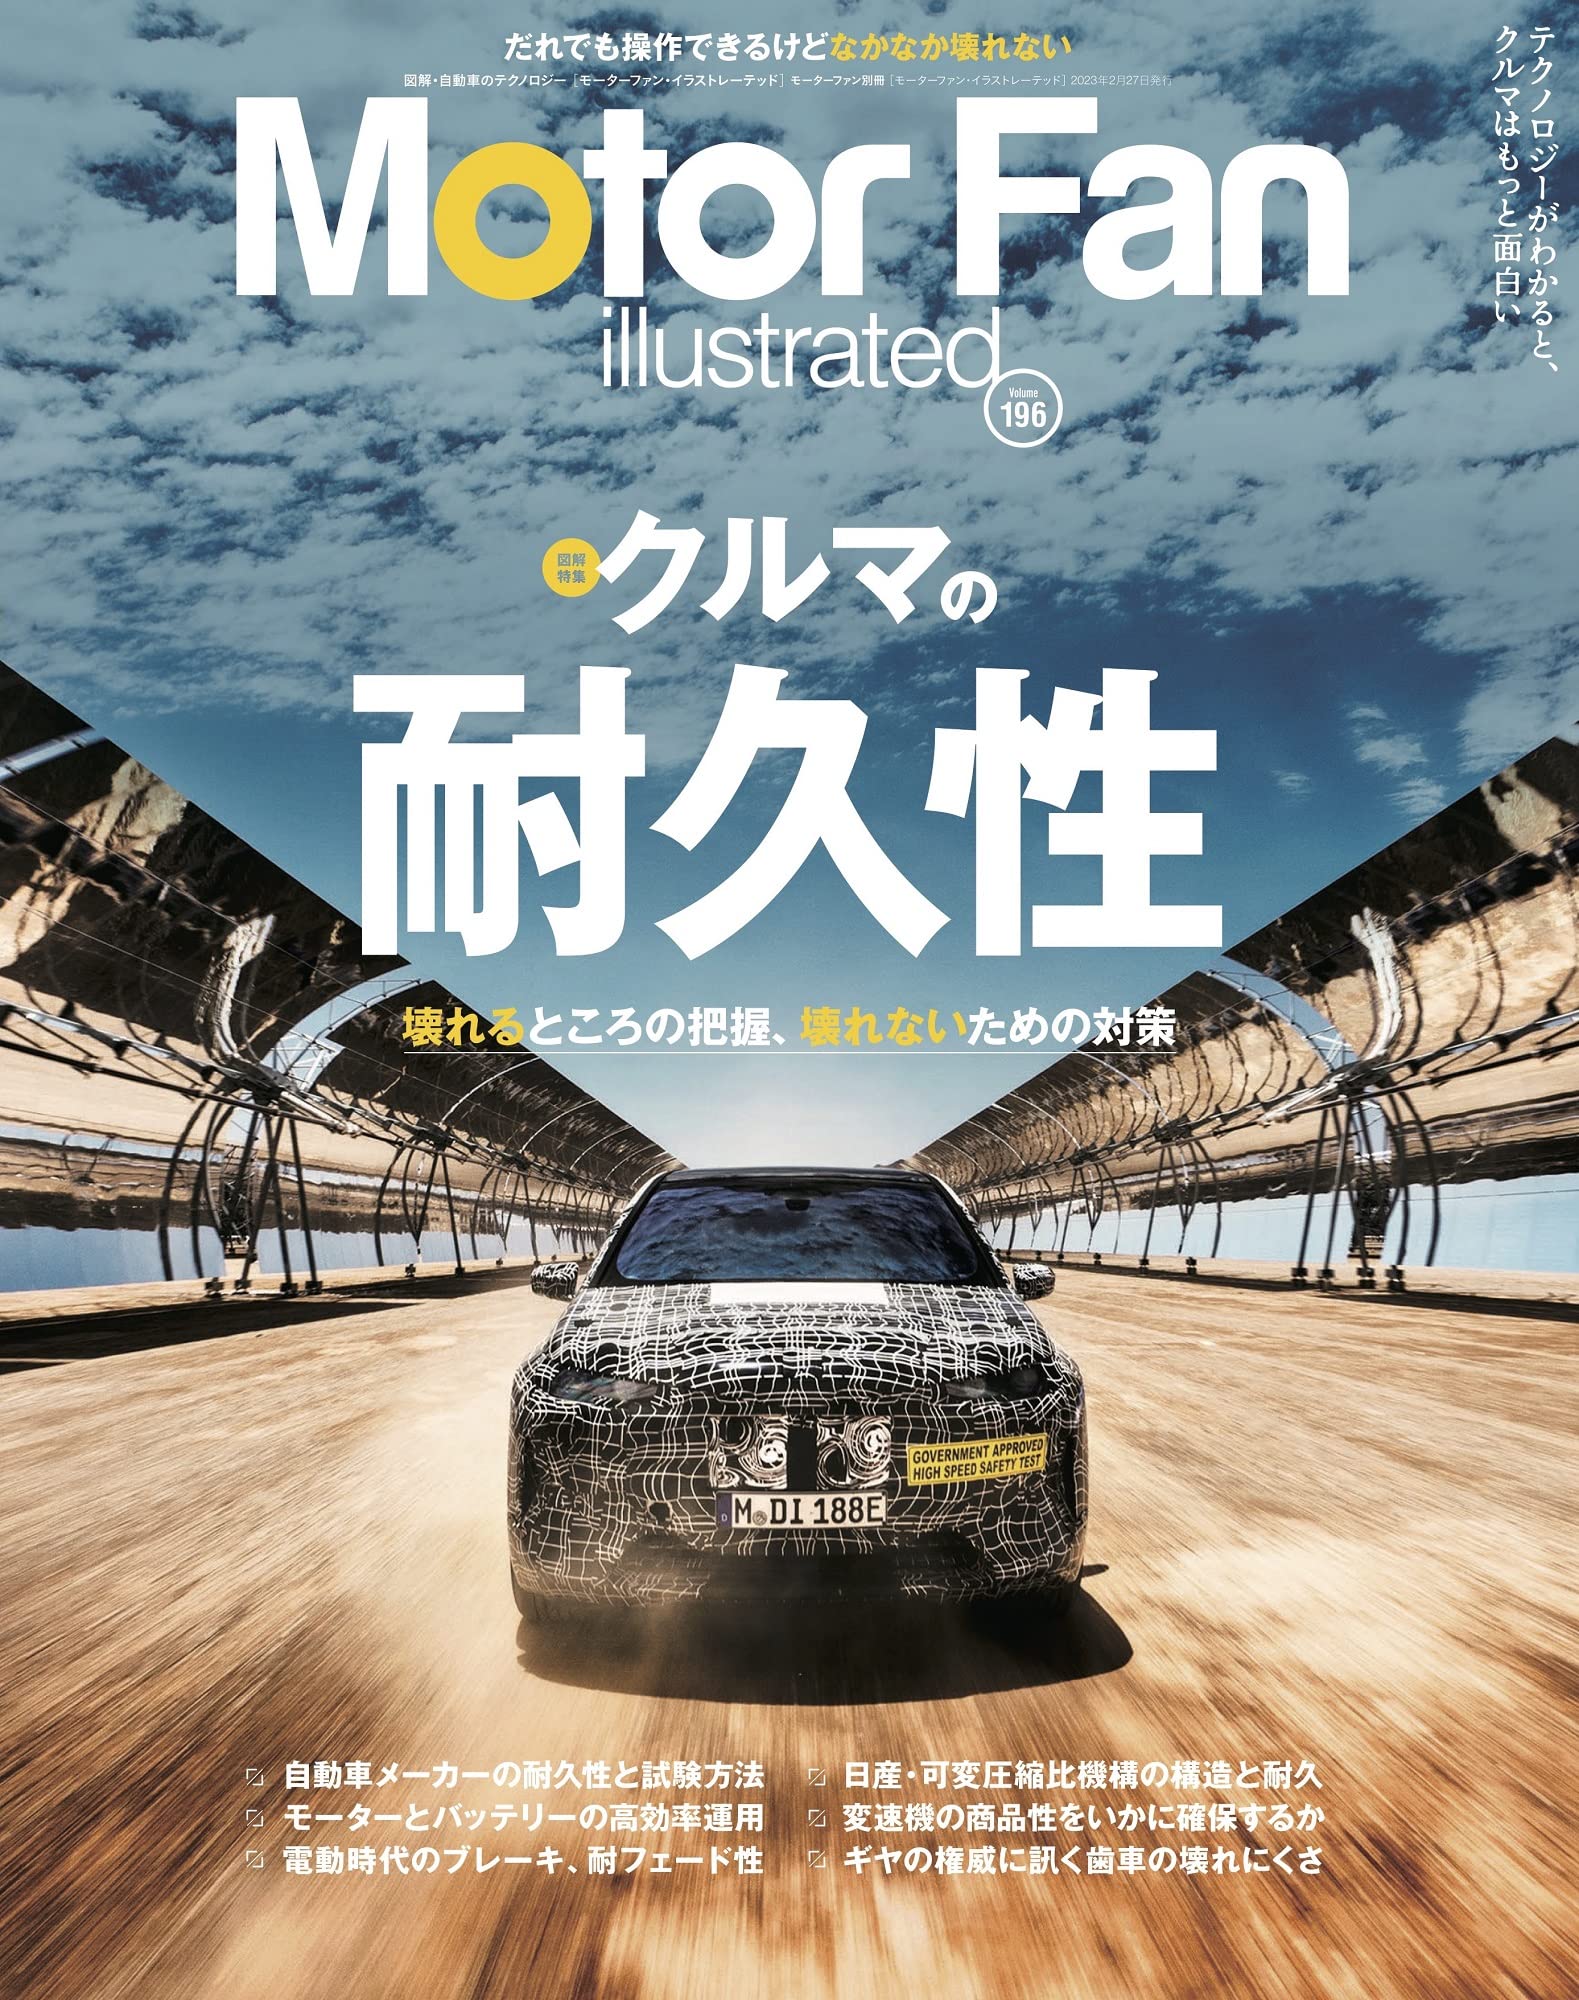 MOTOR FAN illustrated - モ-タ-ファンイラストレ-テッド - Vol.196 モ-タ-ファン別冊